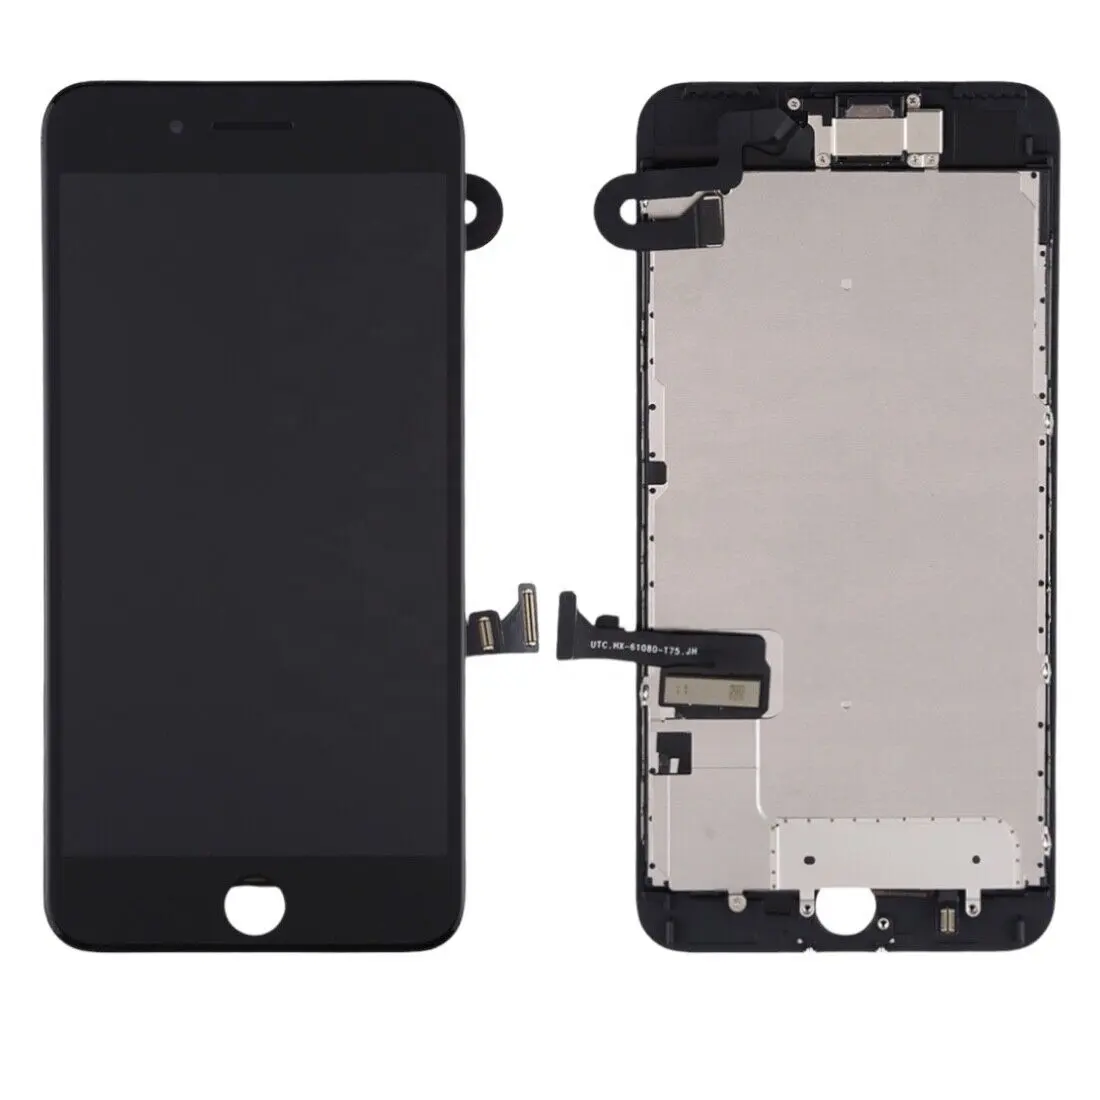 Display untuk iPhone 7 Plus Layar Sentuh LCD Perakitan Pengganti Warna Hitam Kualitas TFT